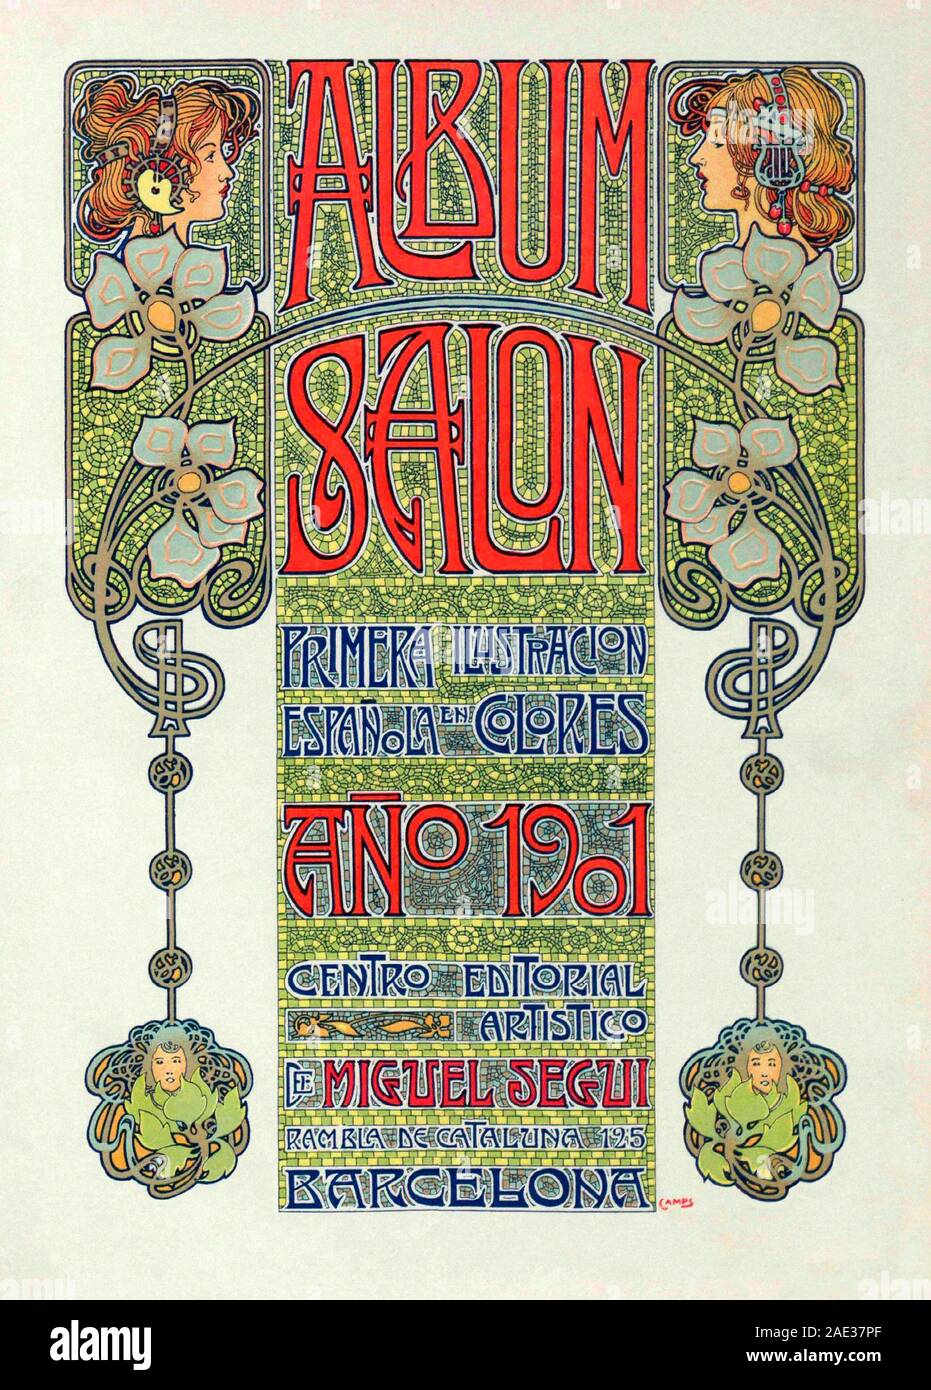 Representación alegórica de las estaciones en estilo Art Nouveau. Salón del álbum. 1901. España, Cataluña, Barcelona Foto de stock